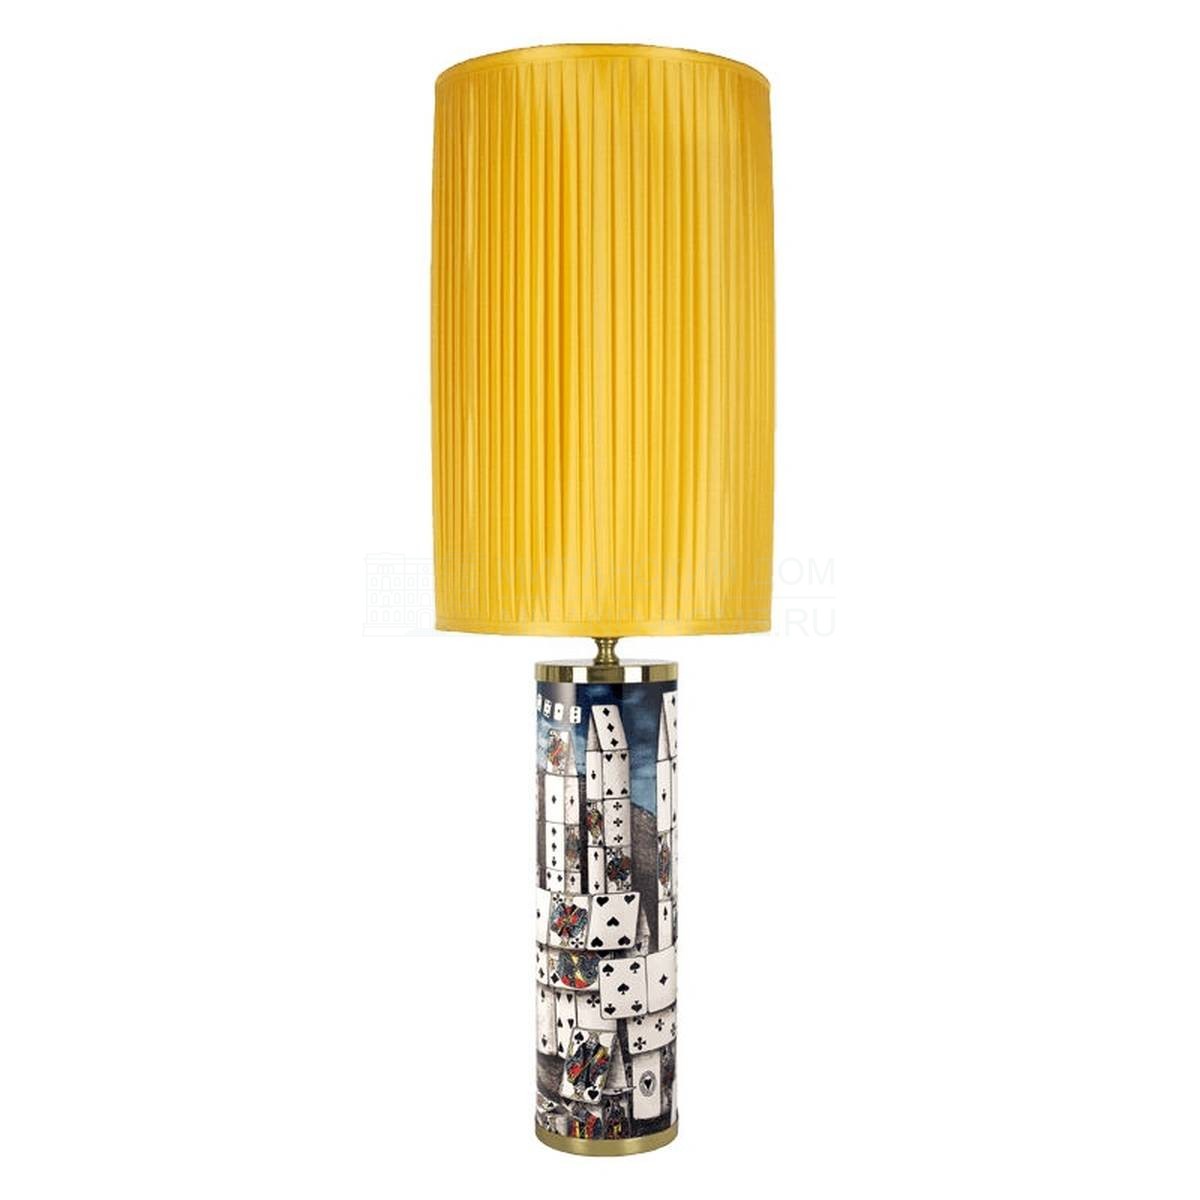 Настольная лампа Citta de carte из Италии фабрики FORNASETTI